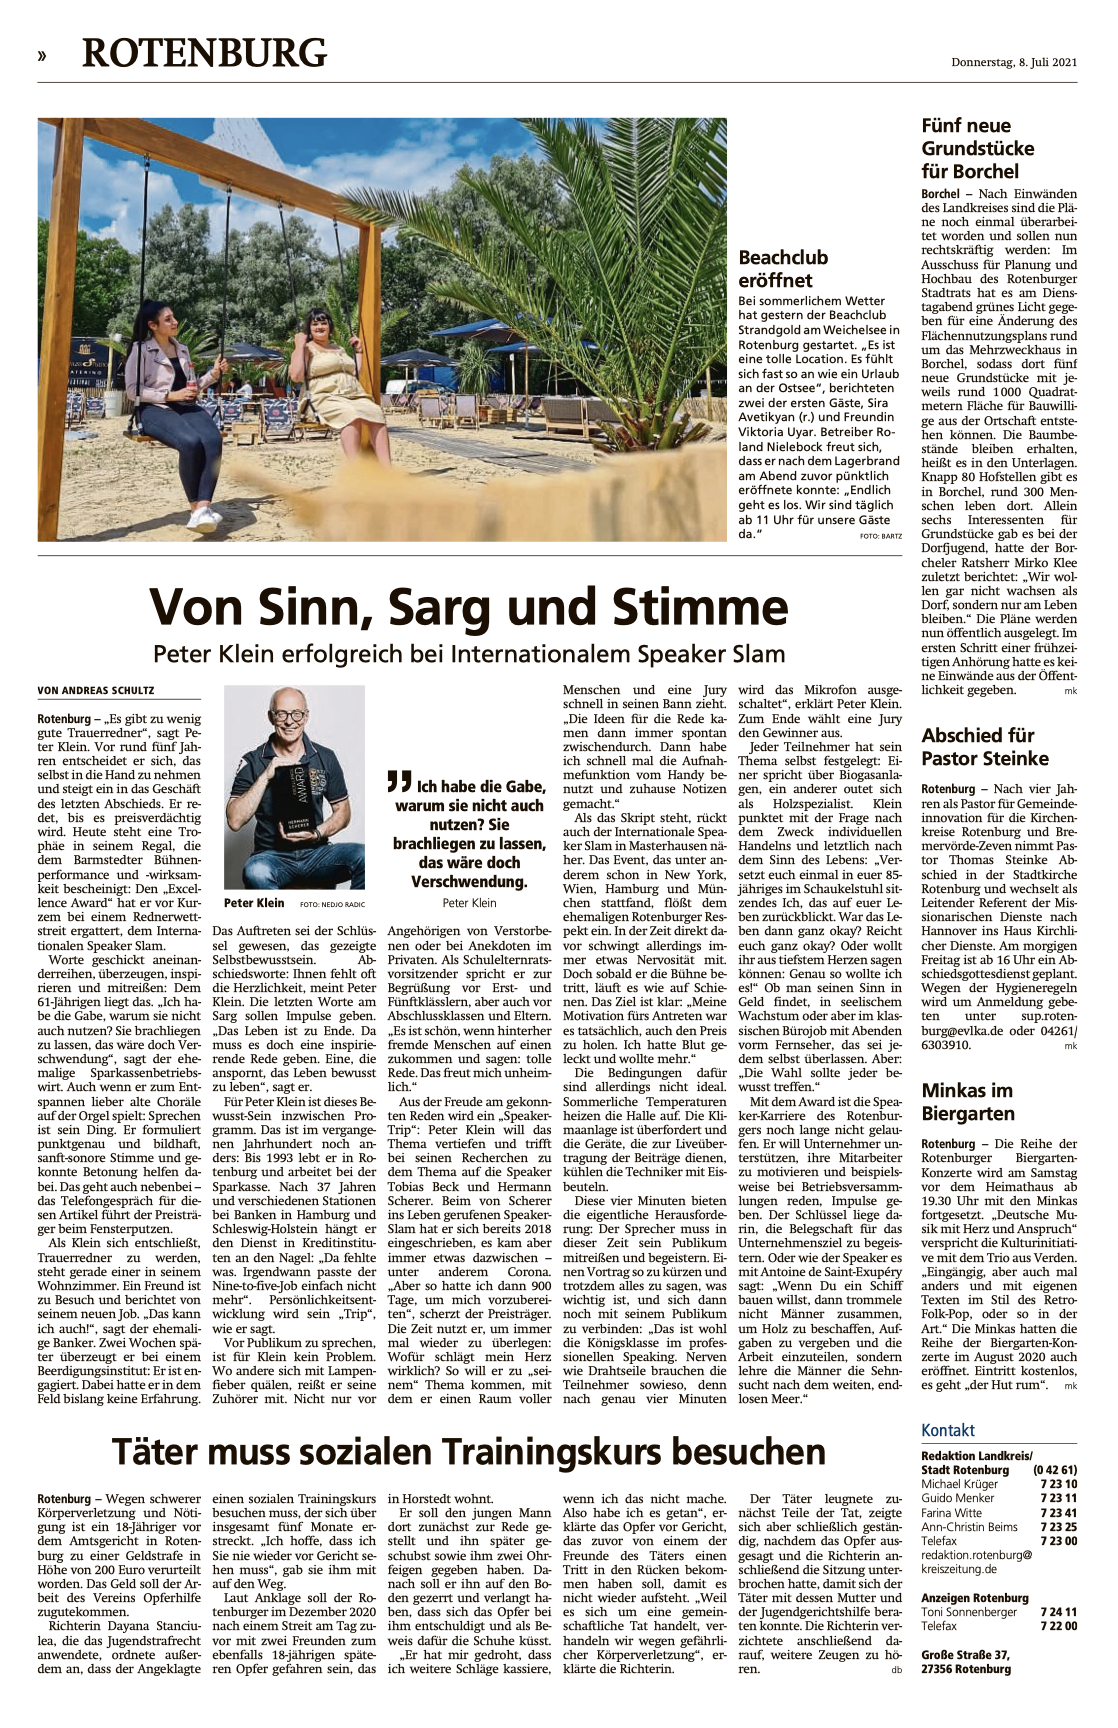 Rotenburger Kreiszeitung über Peter Werner Klein